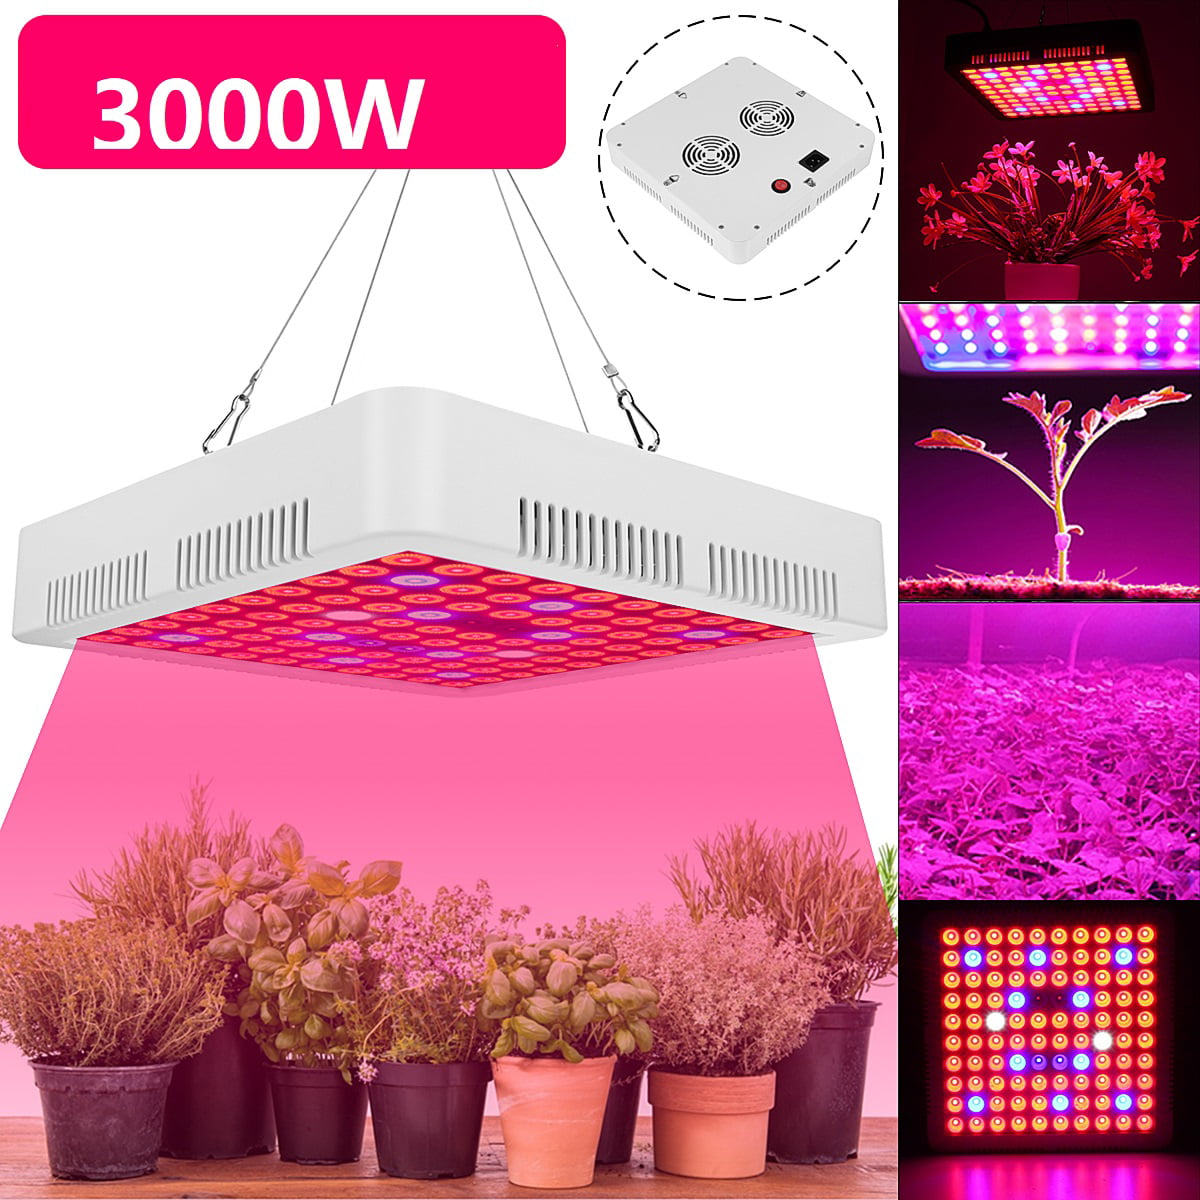 2PCS 1000W UV LED Grow Light Full Spectrum Hydroponic For Plant Veg Flower Lamp 